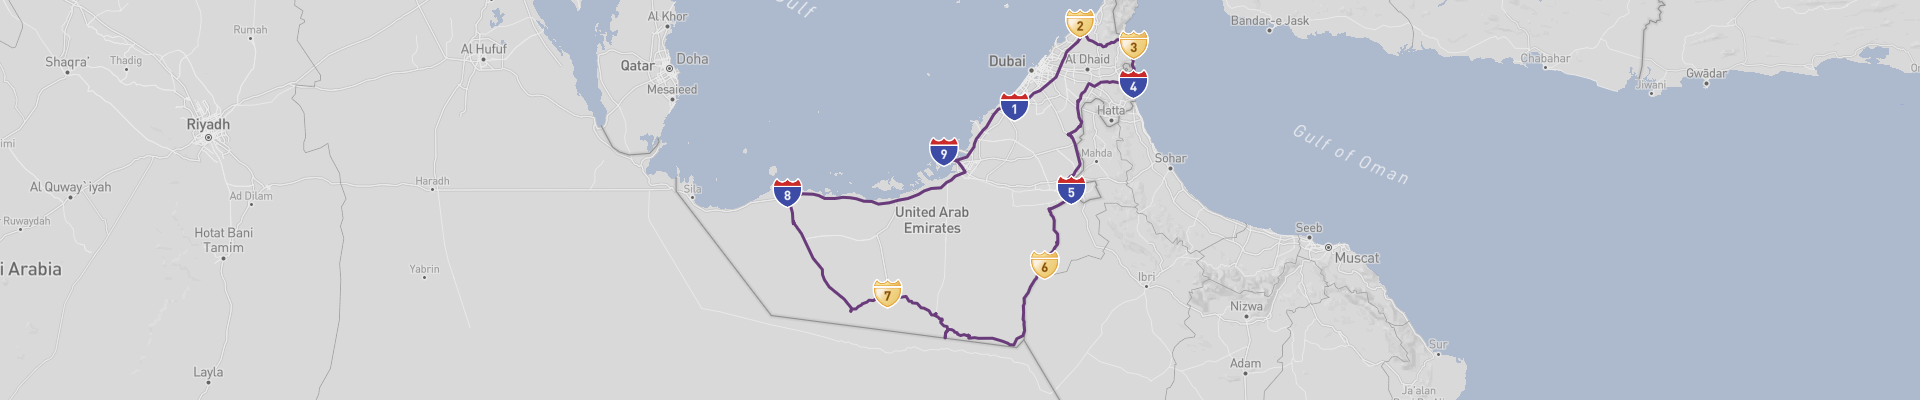 Verenigde Arabische Emiraten Road Trip